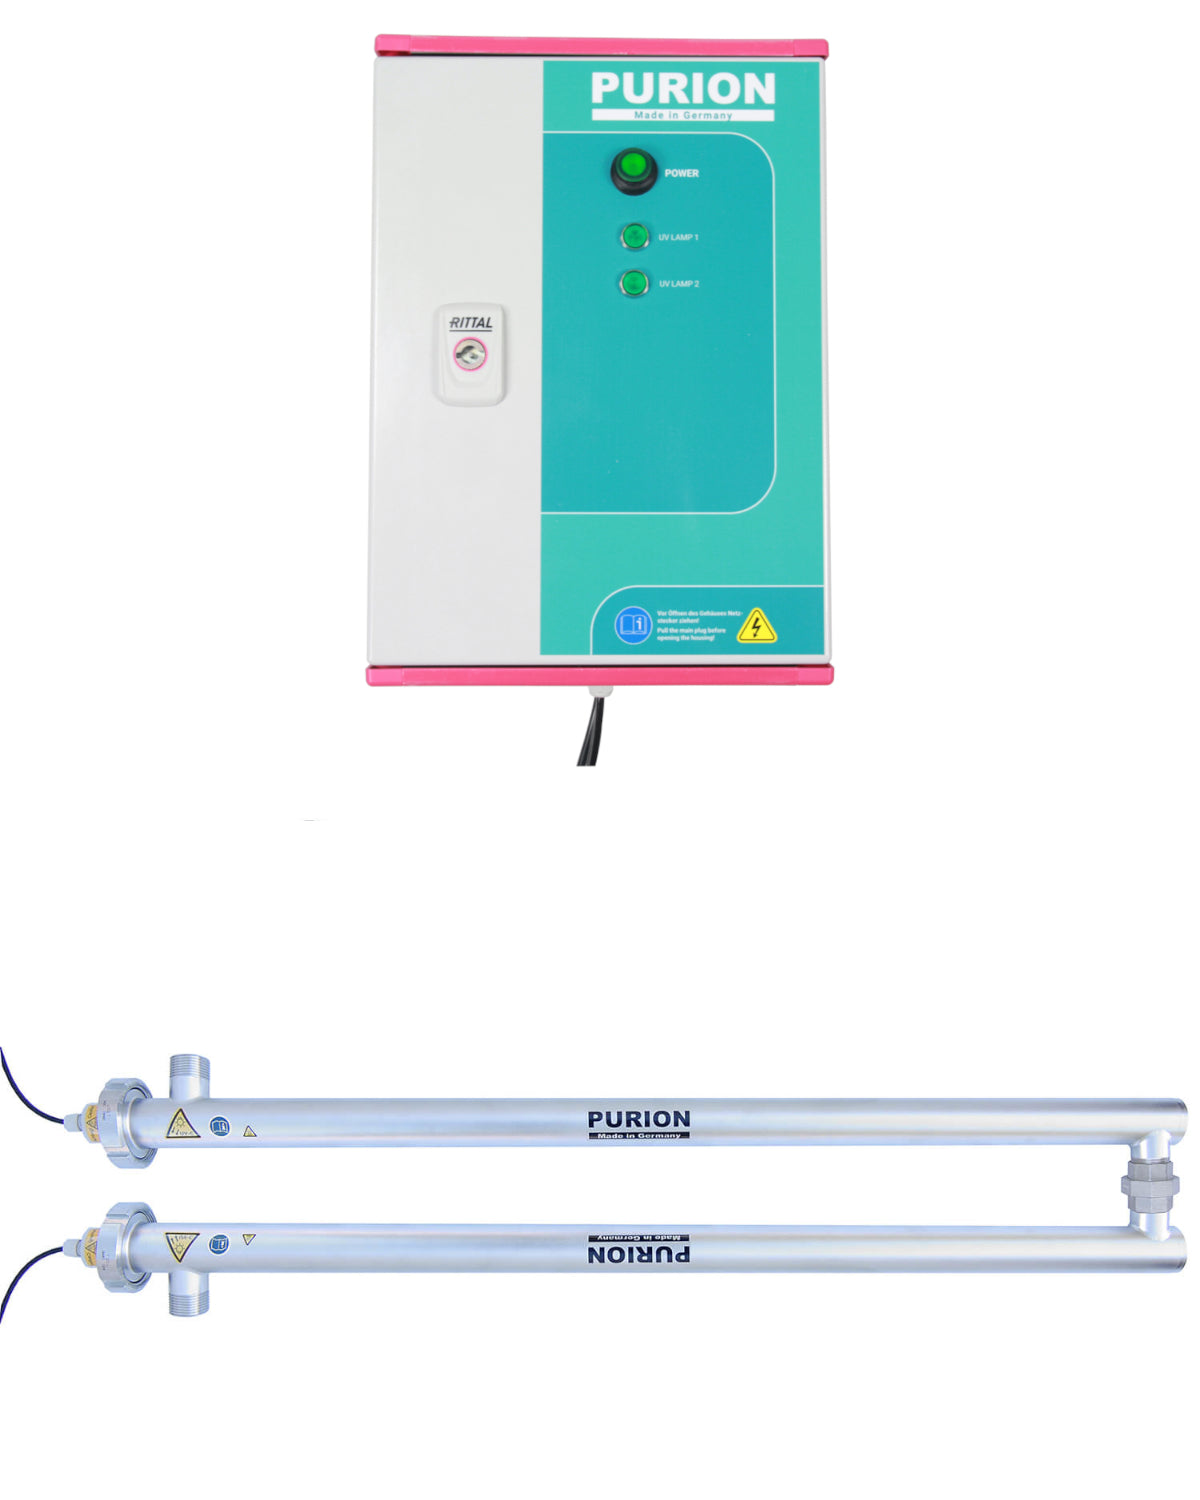 Ein kleines Gerät mit einem rosa Griff und einem blauen Griff, konzipiert für die UV-C-Desinfektion und Trinkwasserdesinfektion, genannt PURION 2500 36 W DUAL Basic, hergestellt von der PURION GmbH.